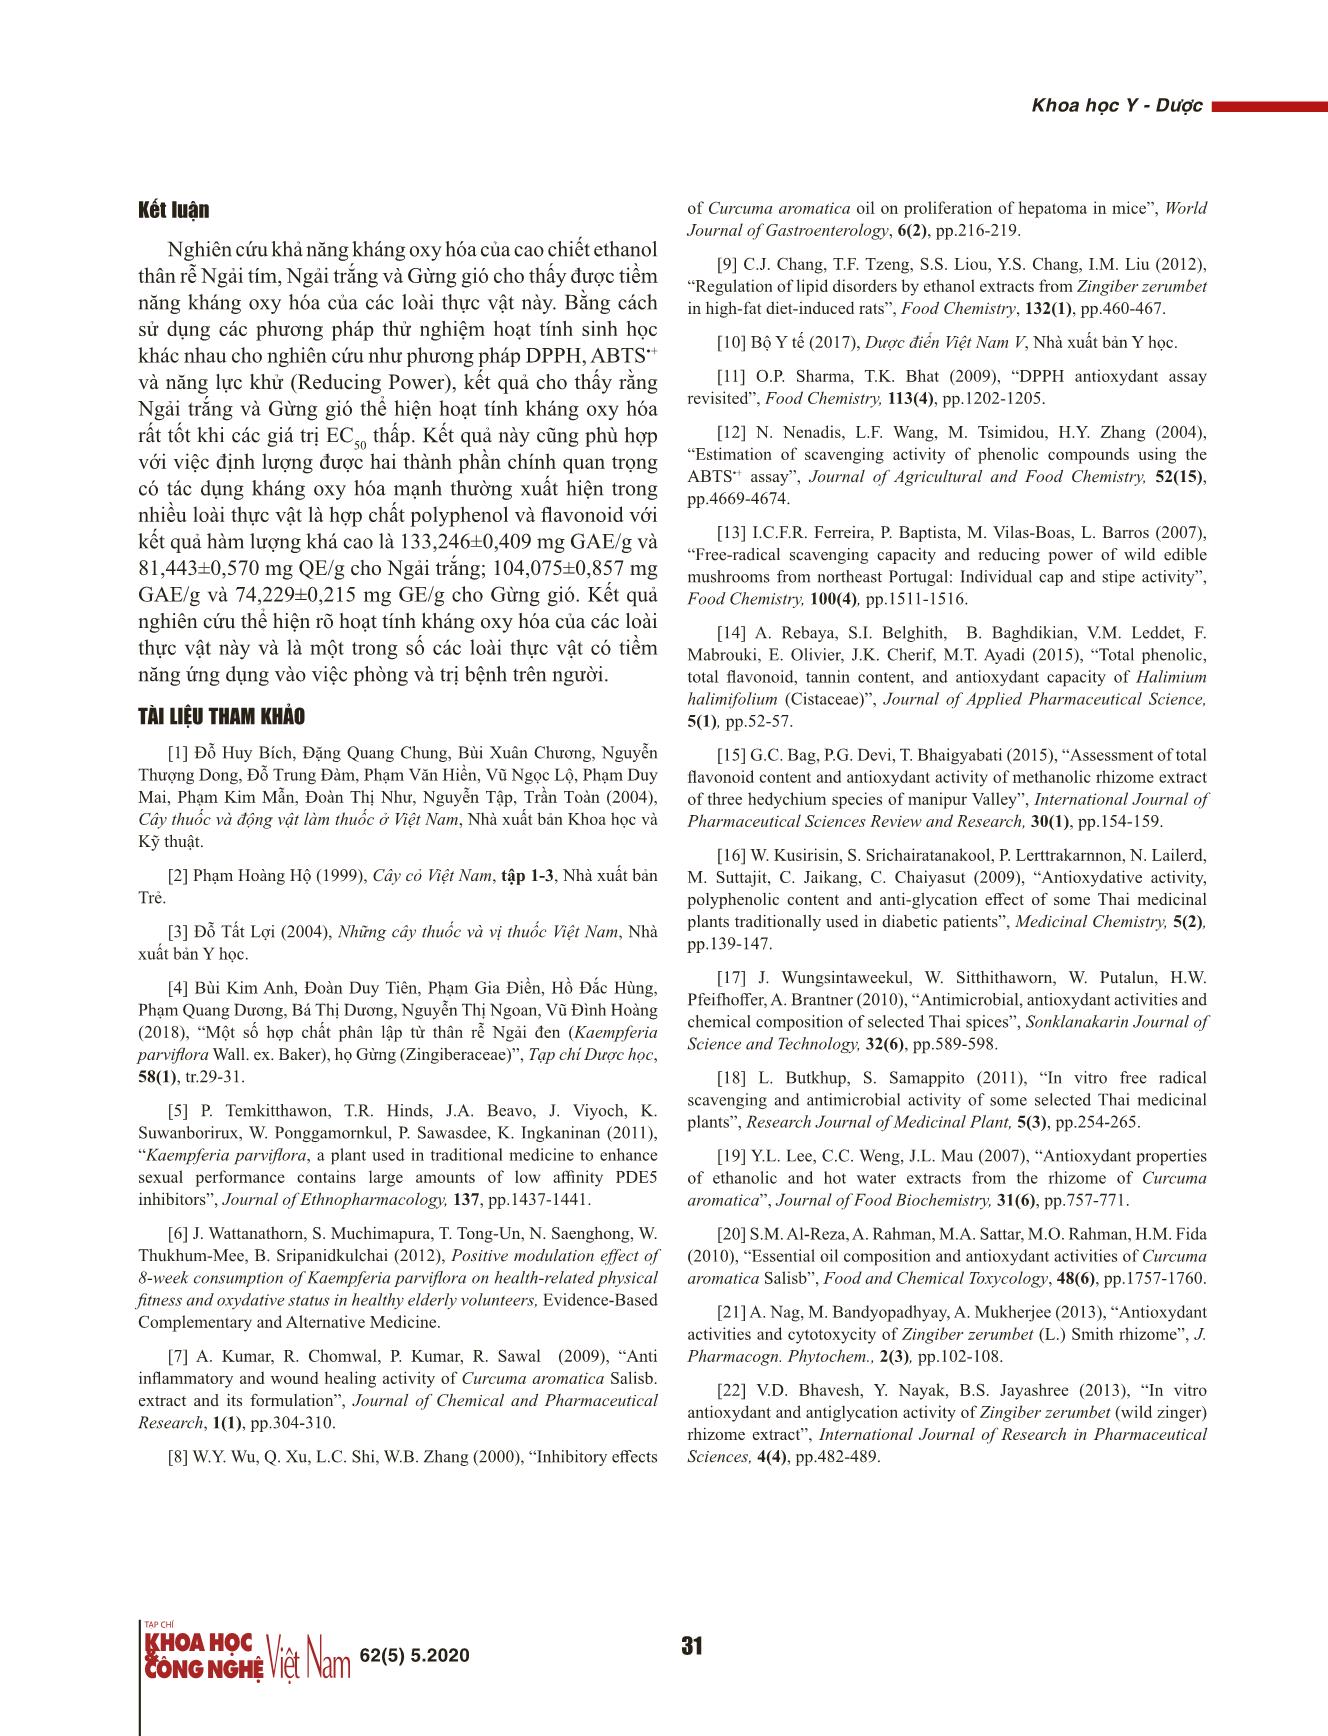 Hoạt tính kháng oxy hóa của cao chiết ethanol thân rễ Ngải tím (Kaempferia parviflora Wall. Ex Baker), Ngải trắng (Curcuma aromatica Salisb.), Gừng gió (Zingiber zerumbet Sm.) trang 6